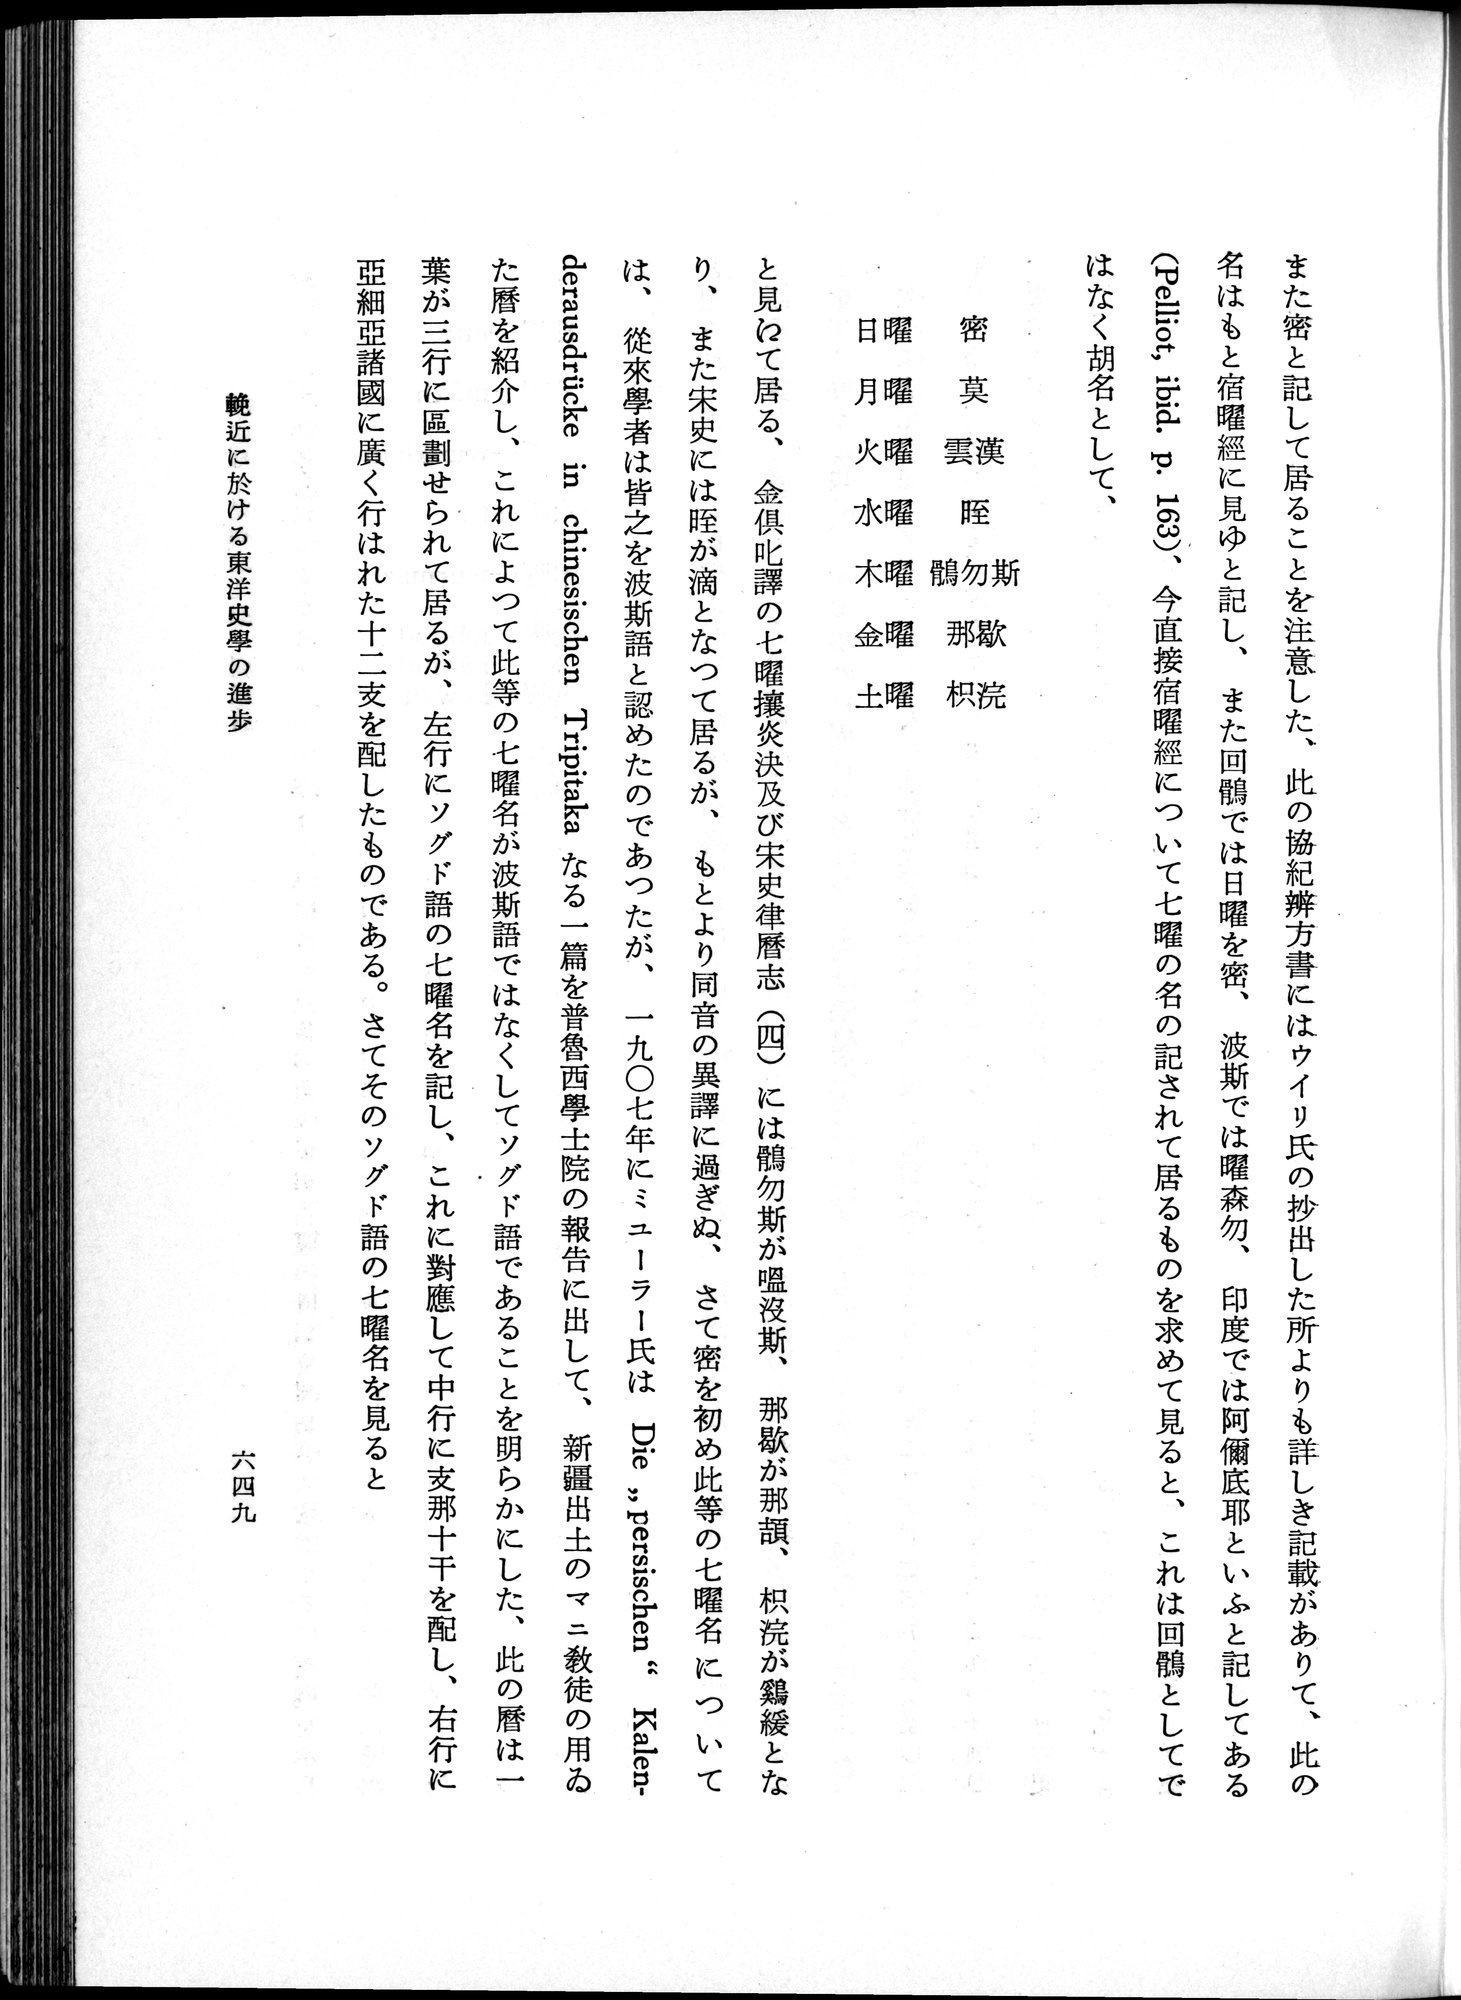 羽田博士史学論文集 : vol.1 / Page 687 (Grayscale High Resolution Image)